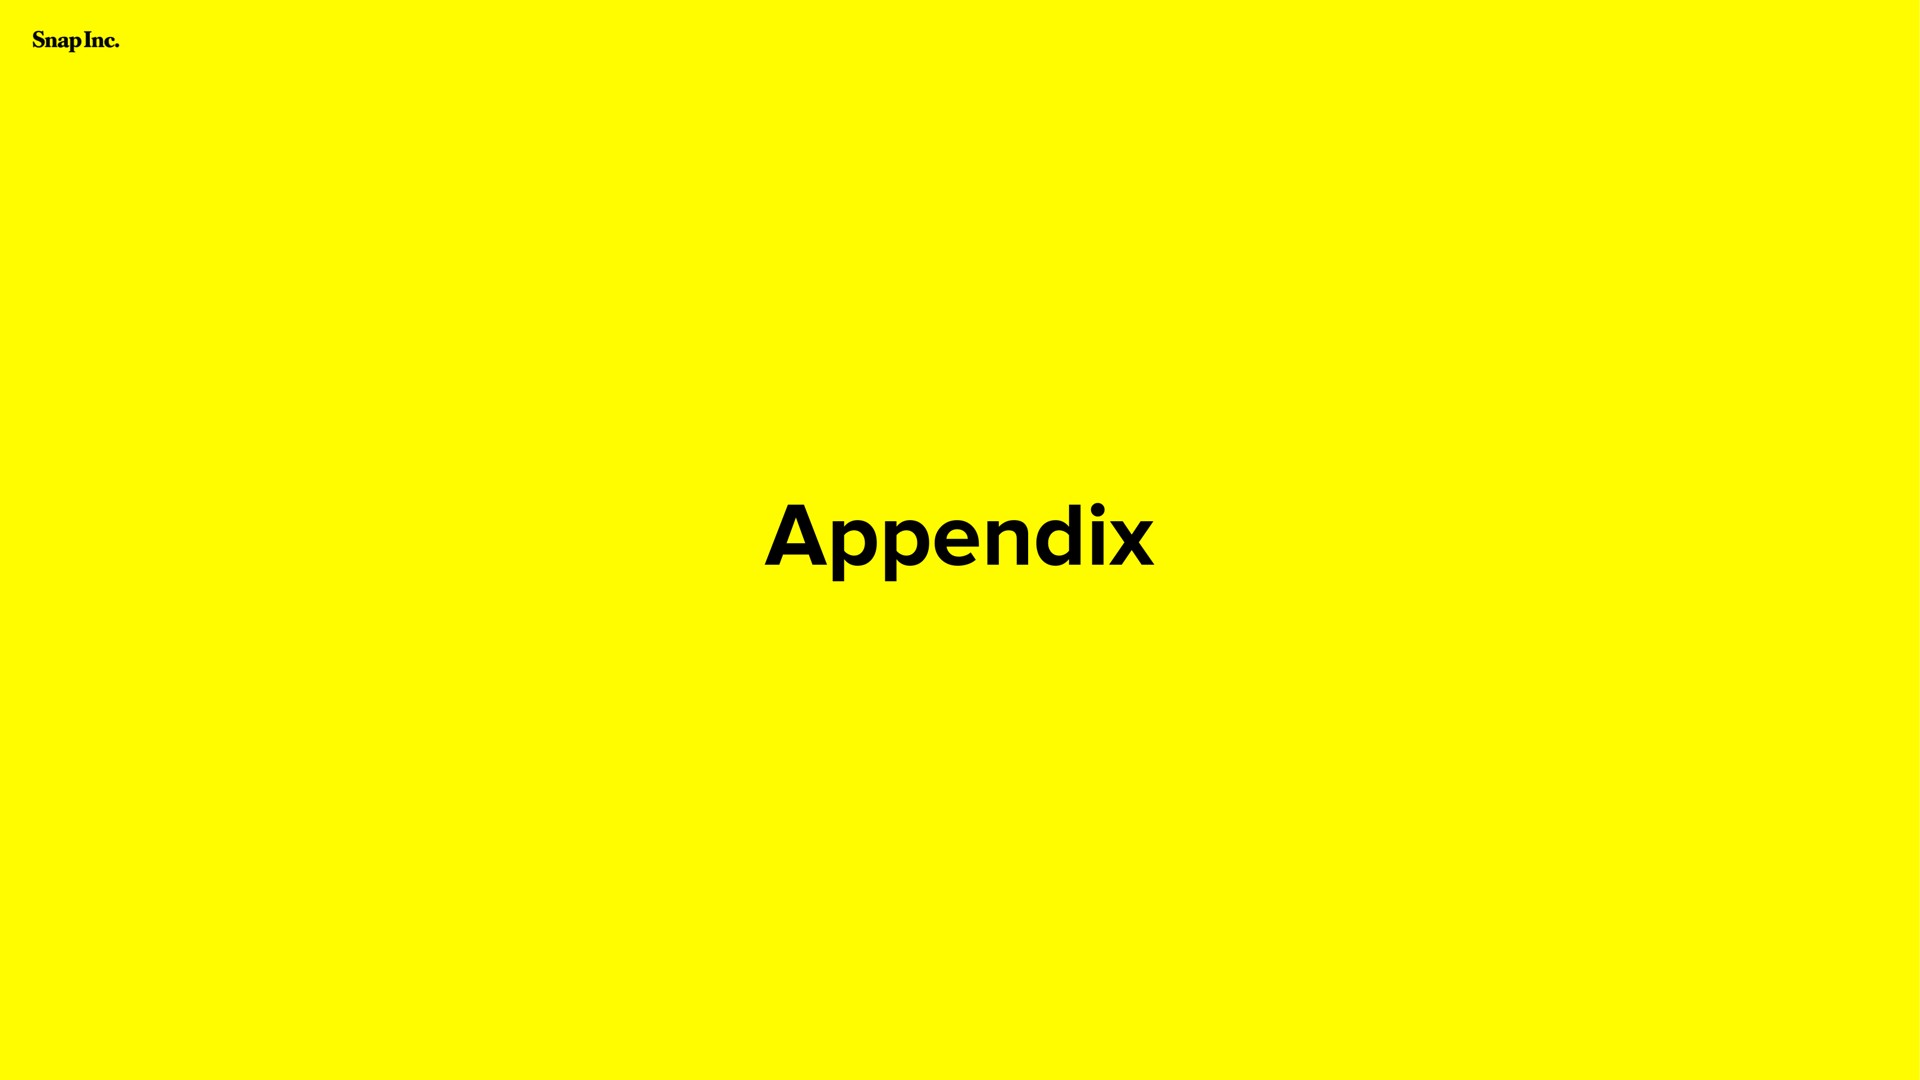 appendix | Snap Inc